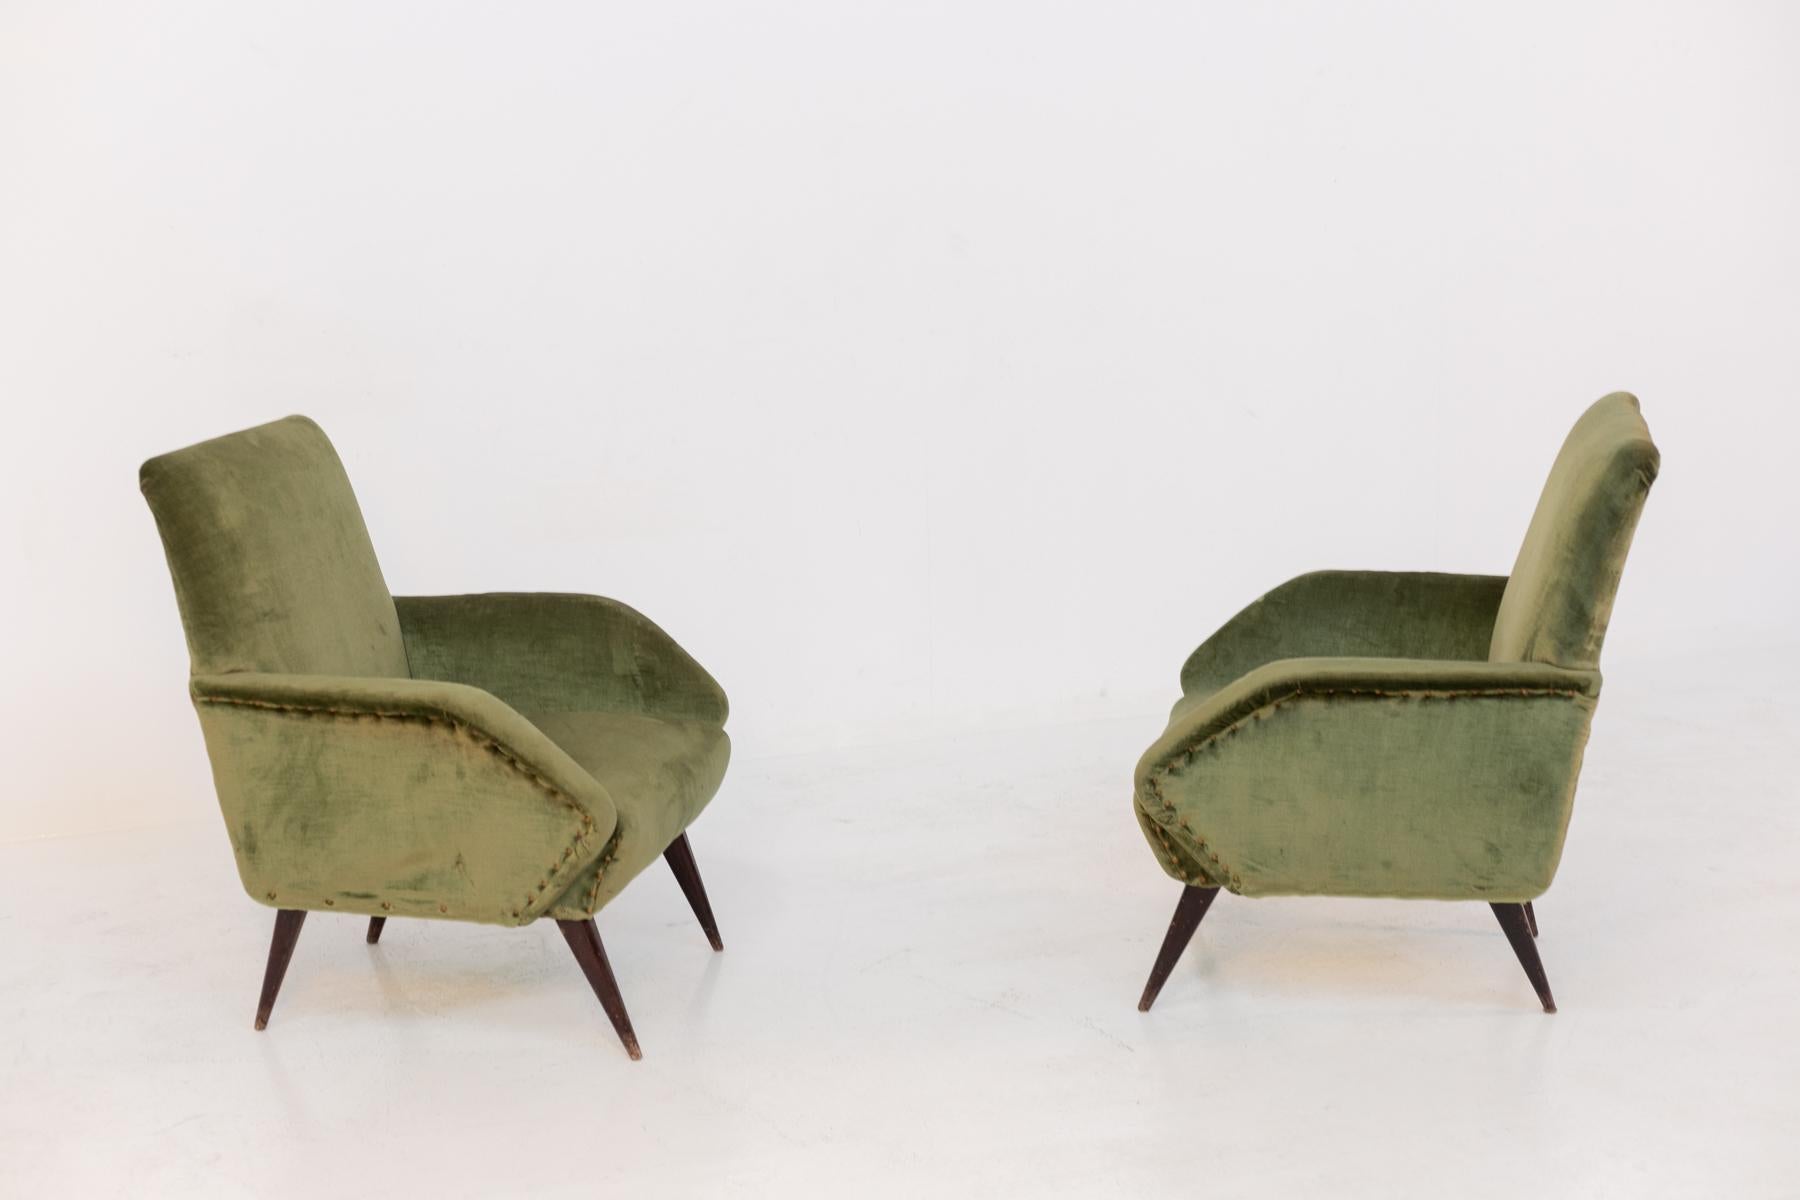 Elegantes Paar italienischer Sessel aus den 1950er Jahren. Die Sessel haben schöne geometrische Formen, die sehr scharf und klar sind. Die Armlehnen haben eine dreieckige Form mit nach außen gerichteter Spitze. Um den Sessel zu verschönern, finden